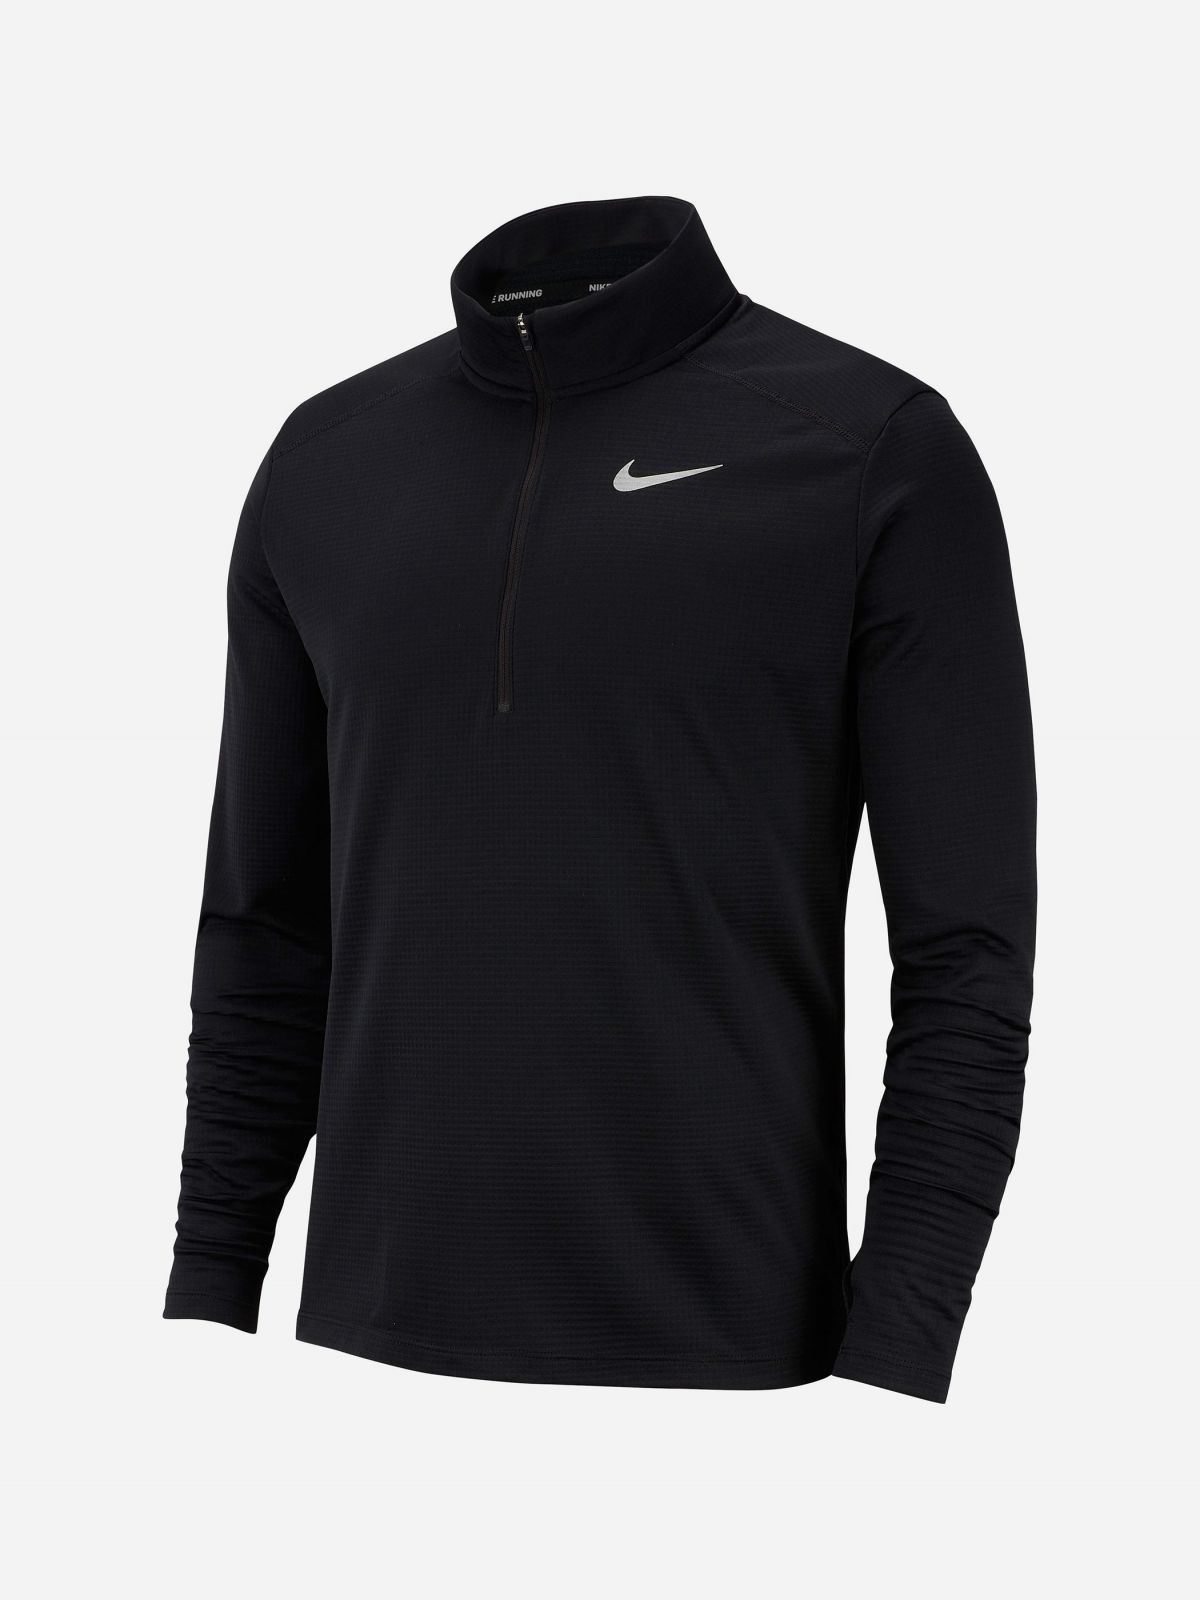  חולצת ריצה עם לוגו Nike Pacer של NIKE